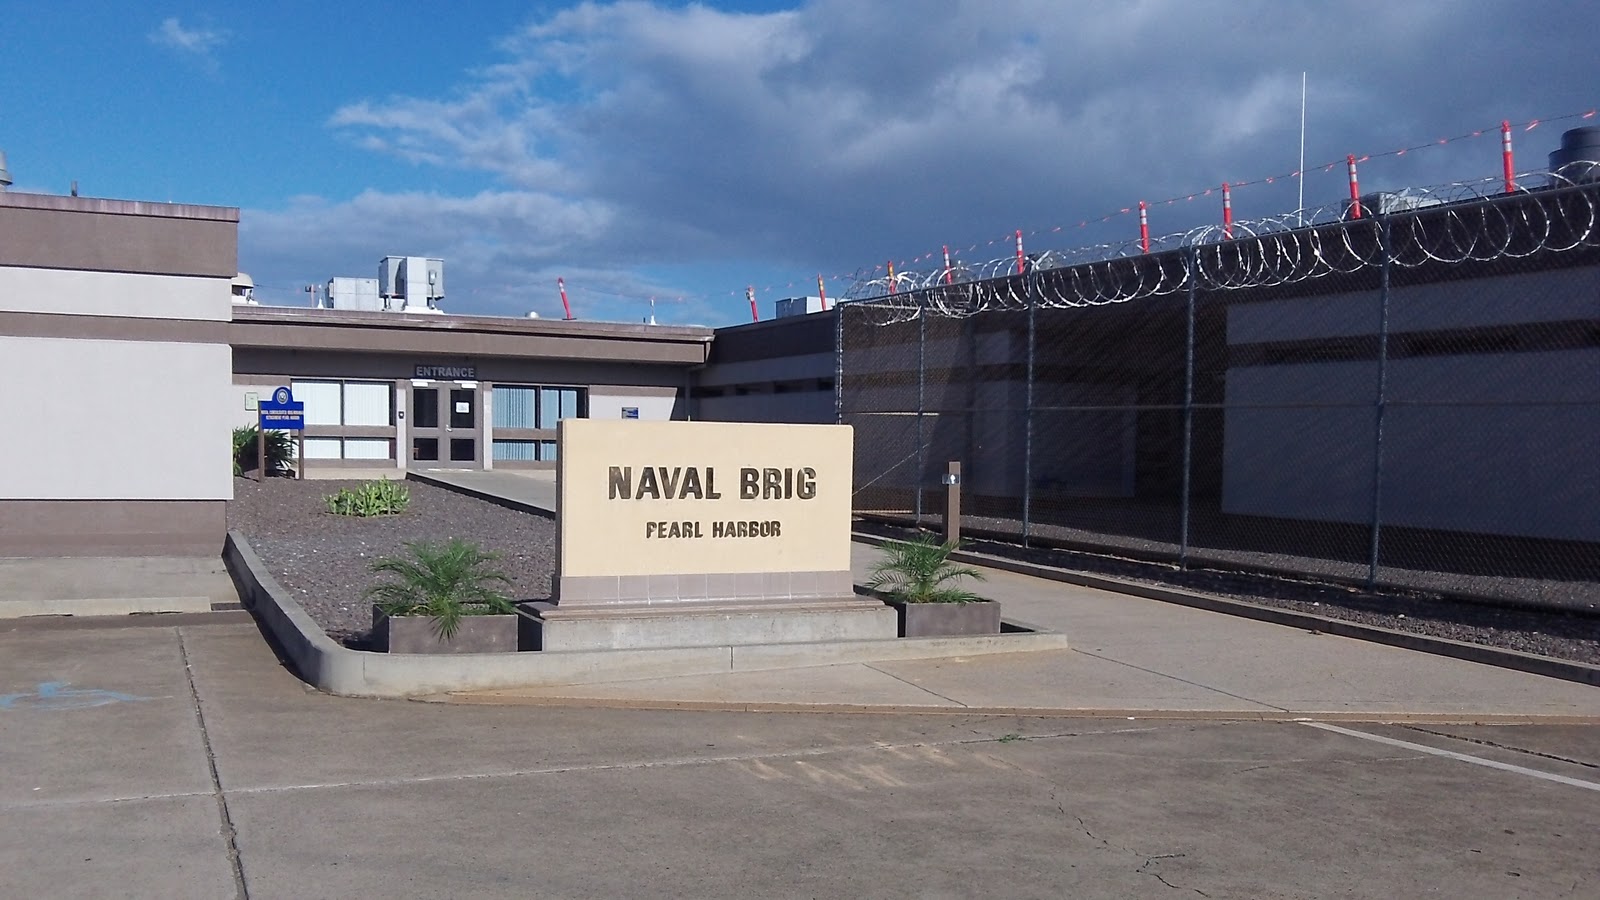 Naval brig ford island address